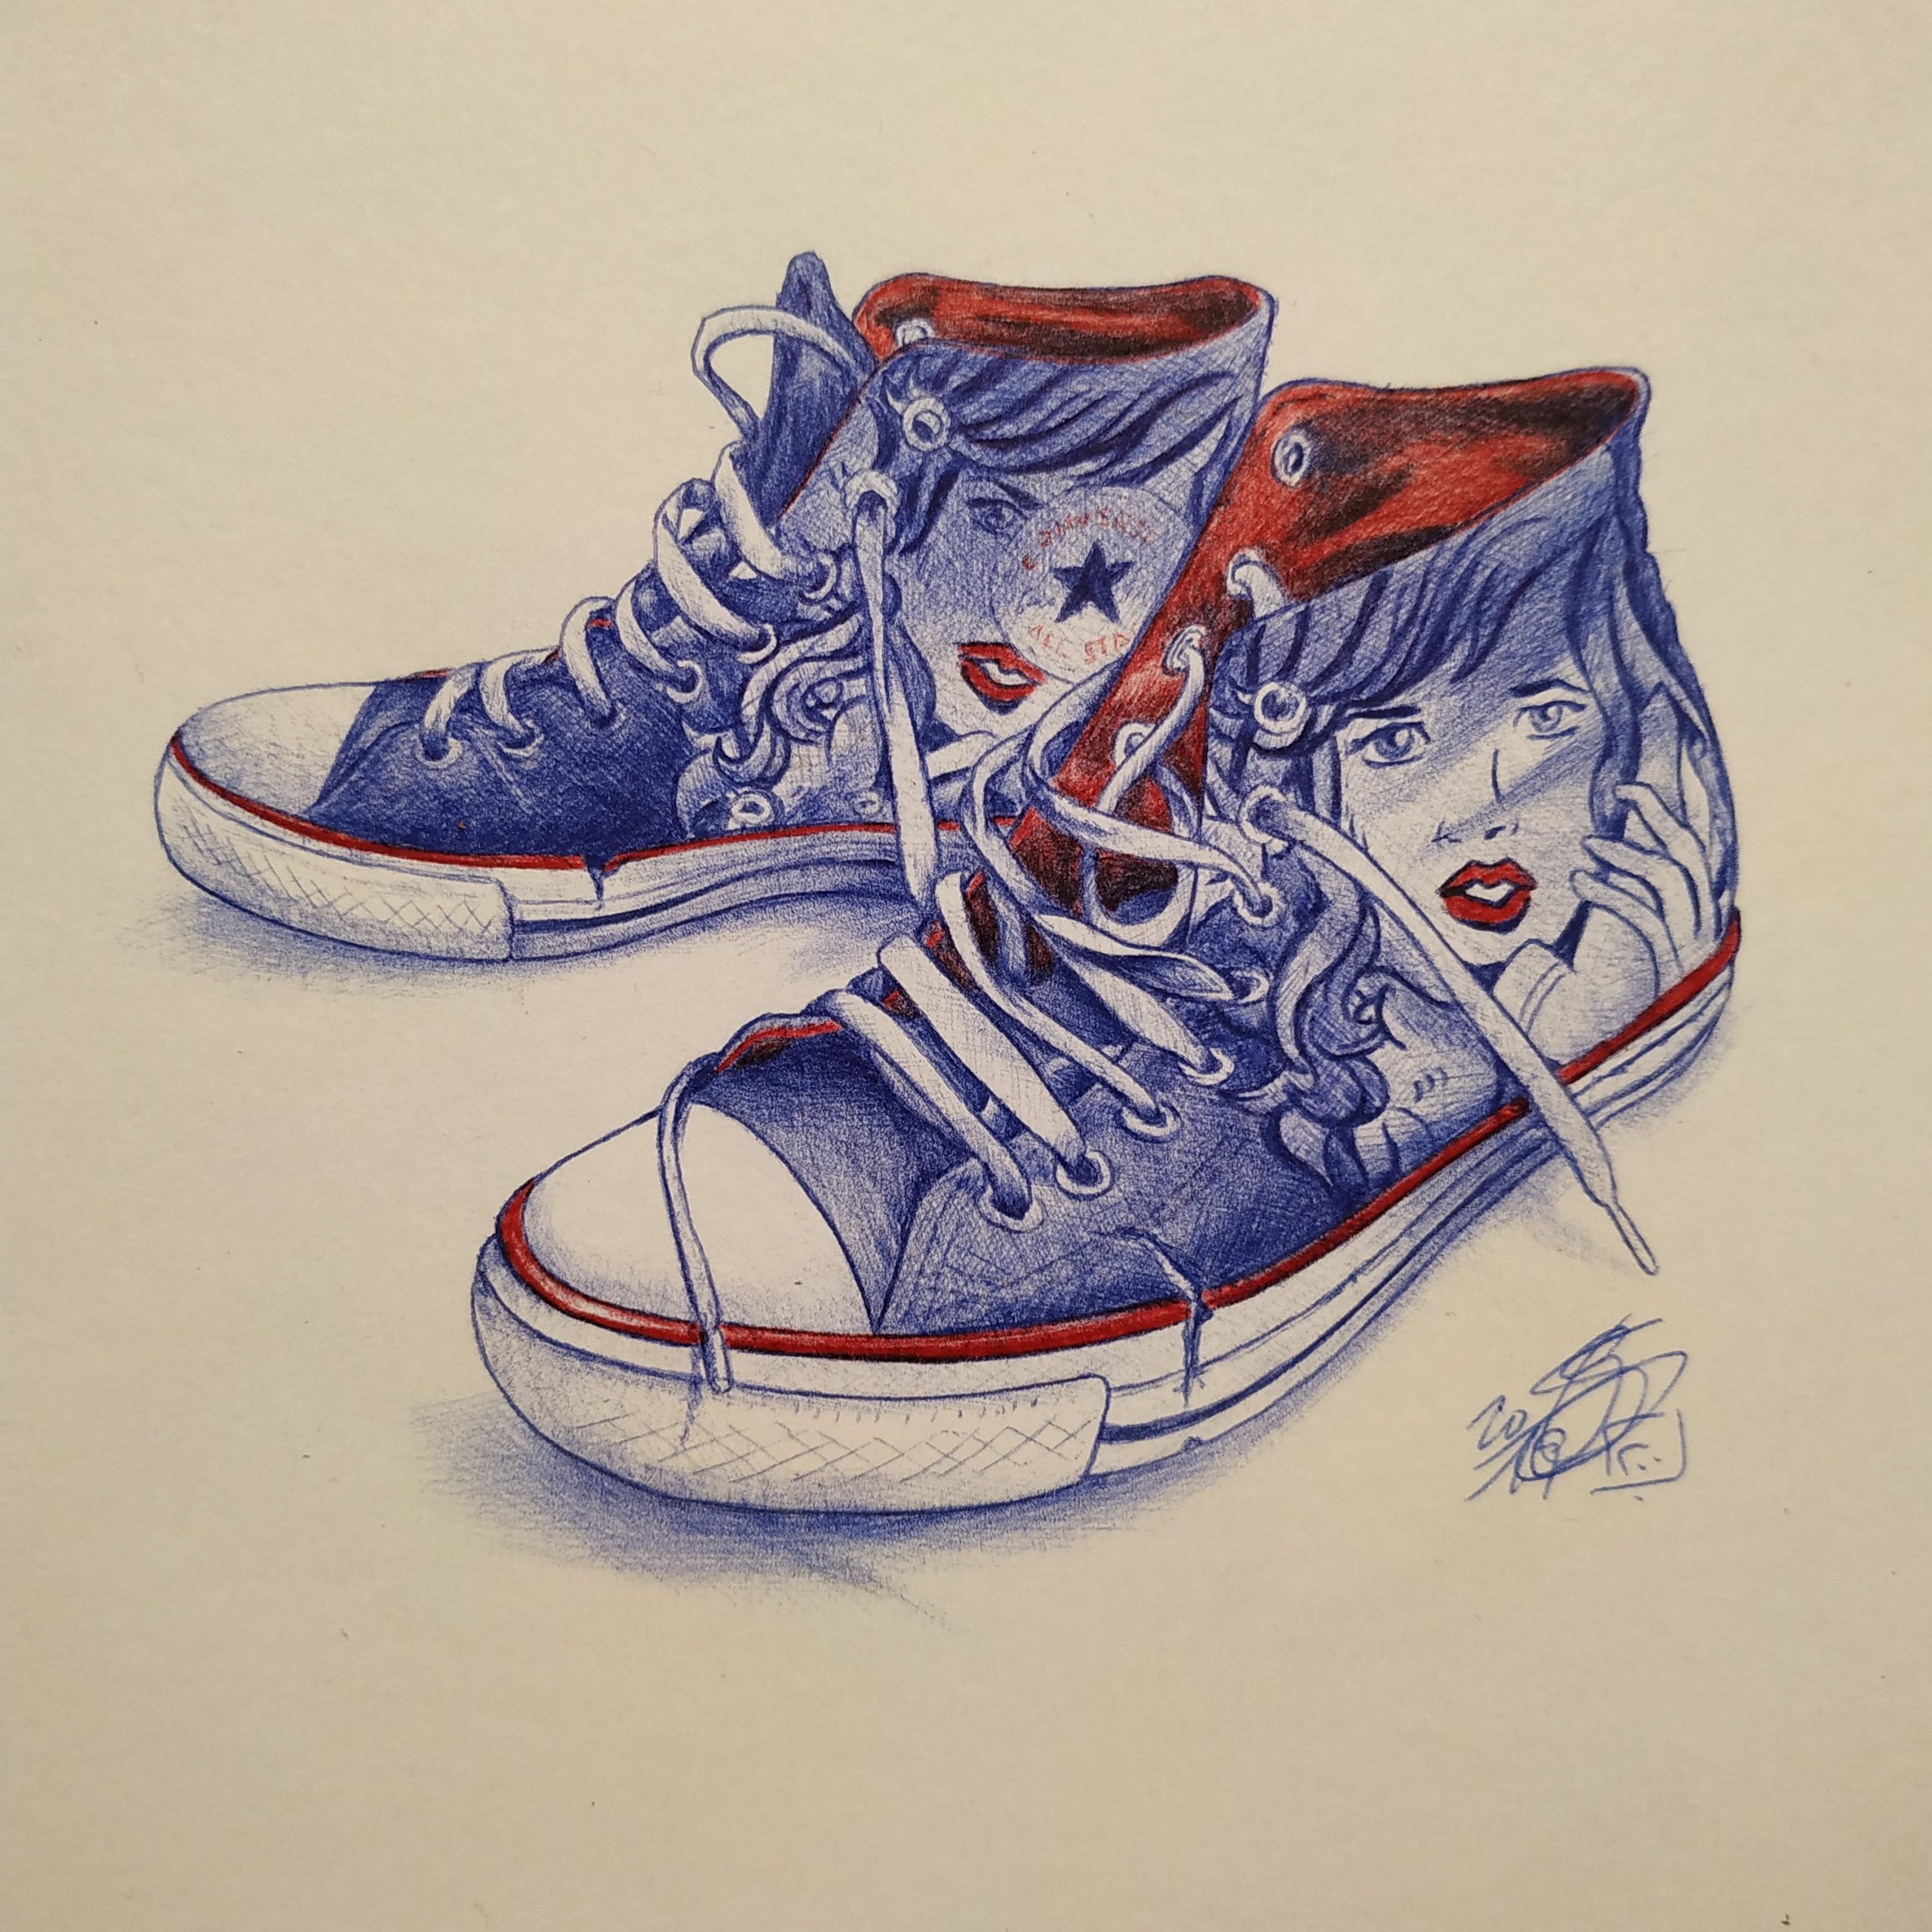 Dibujo a bolígrafo de unas zapatillas Converse con decoración pop art de una chica hablando por teléfono